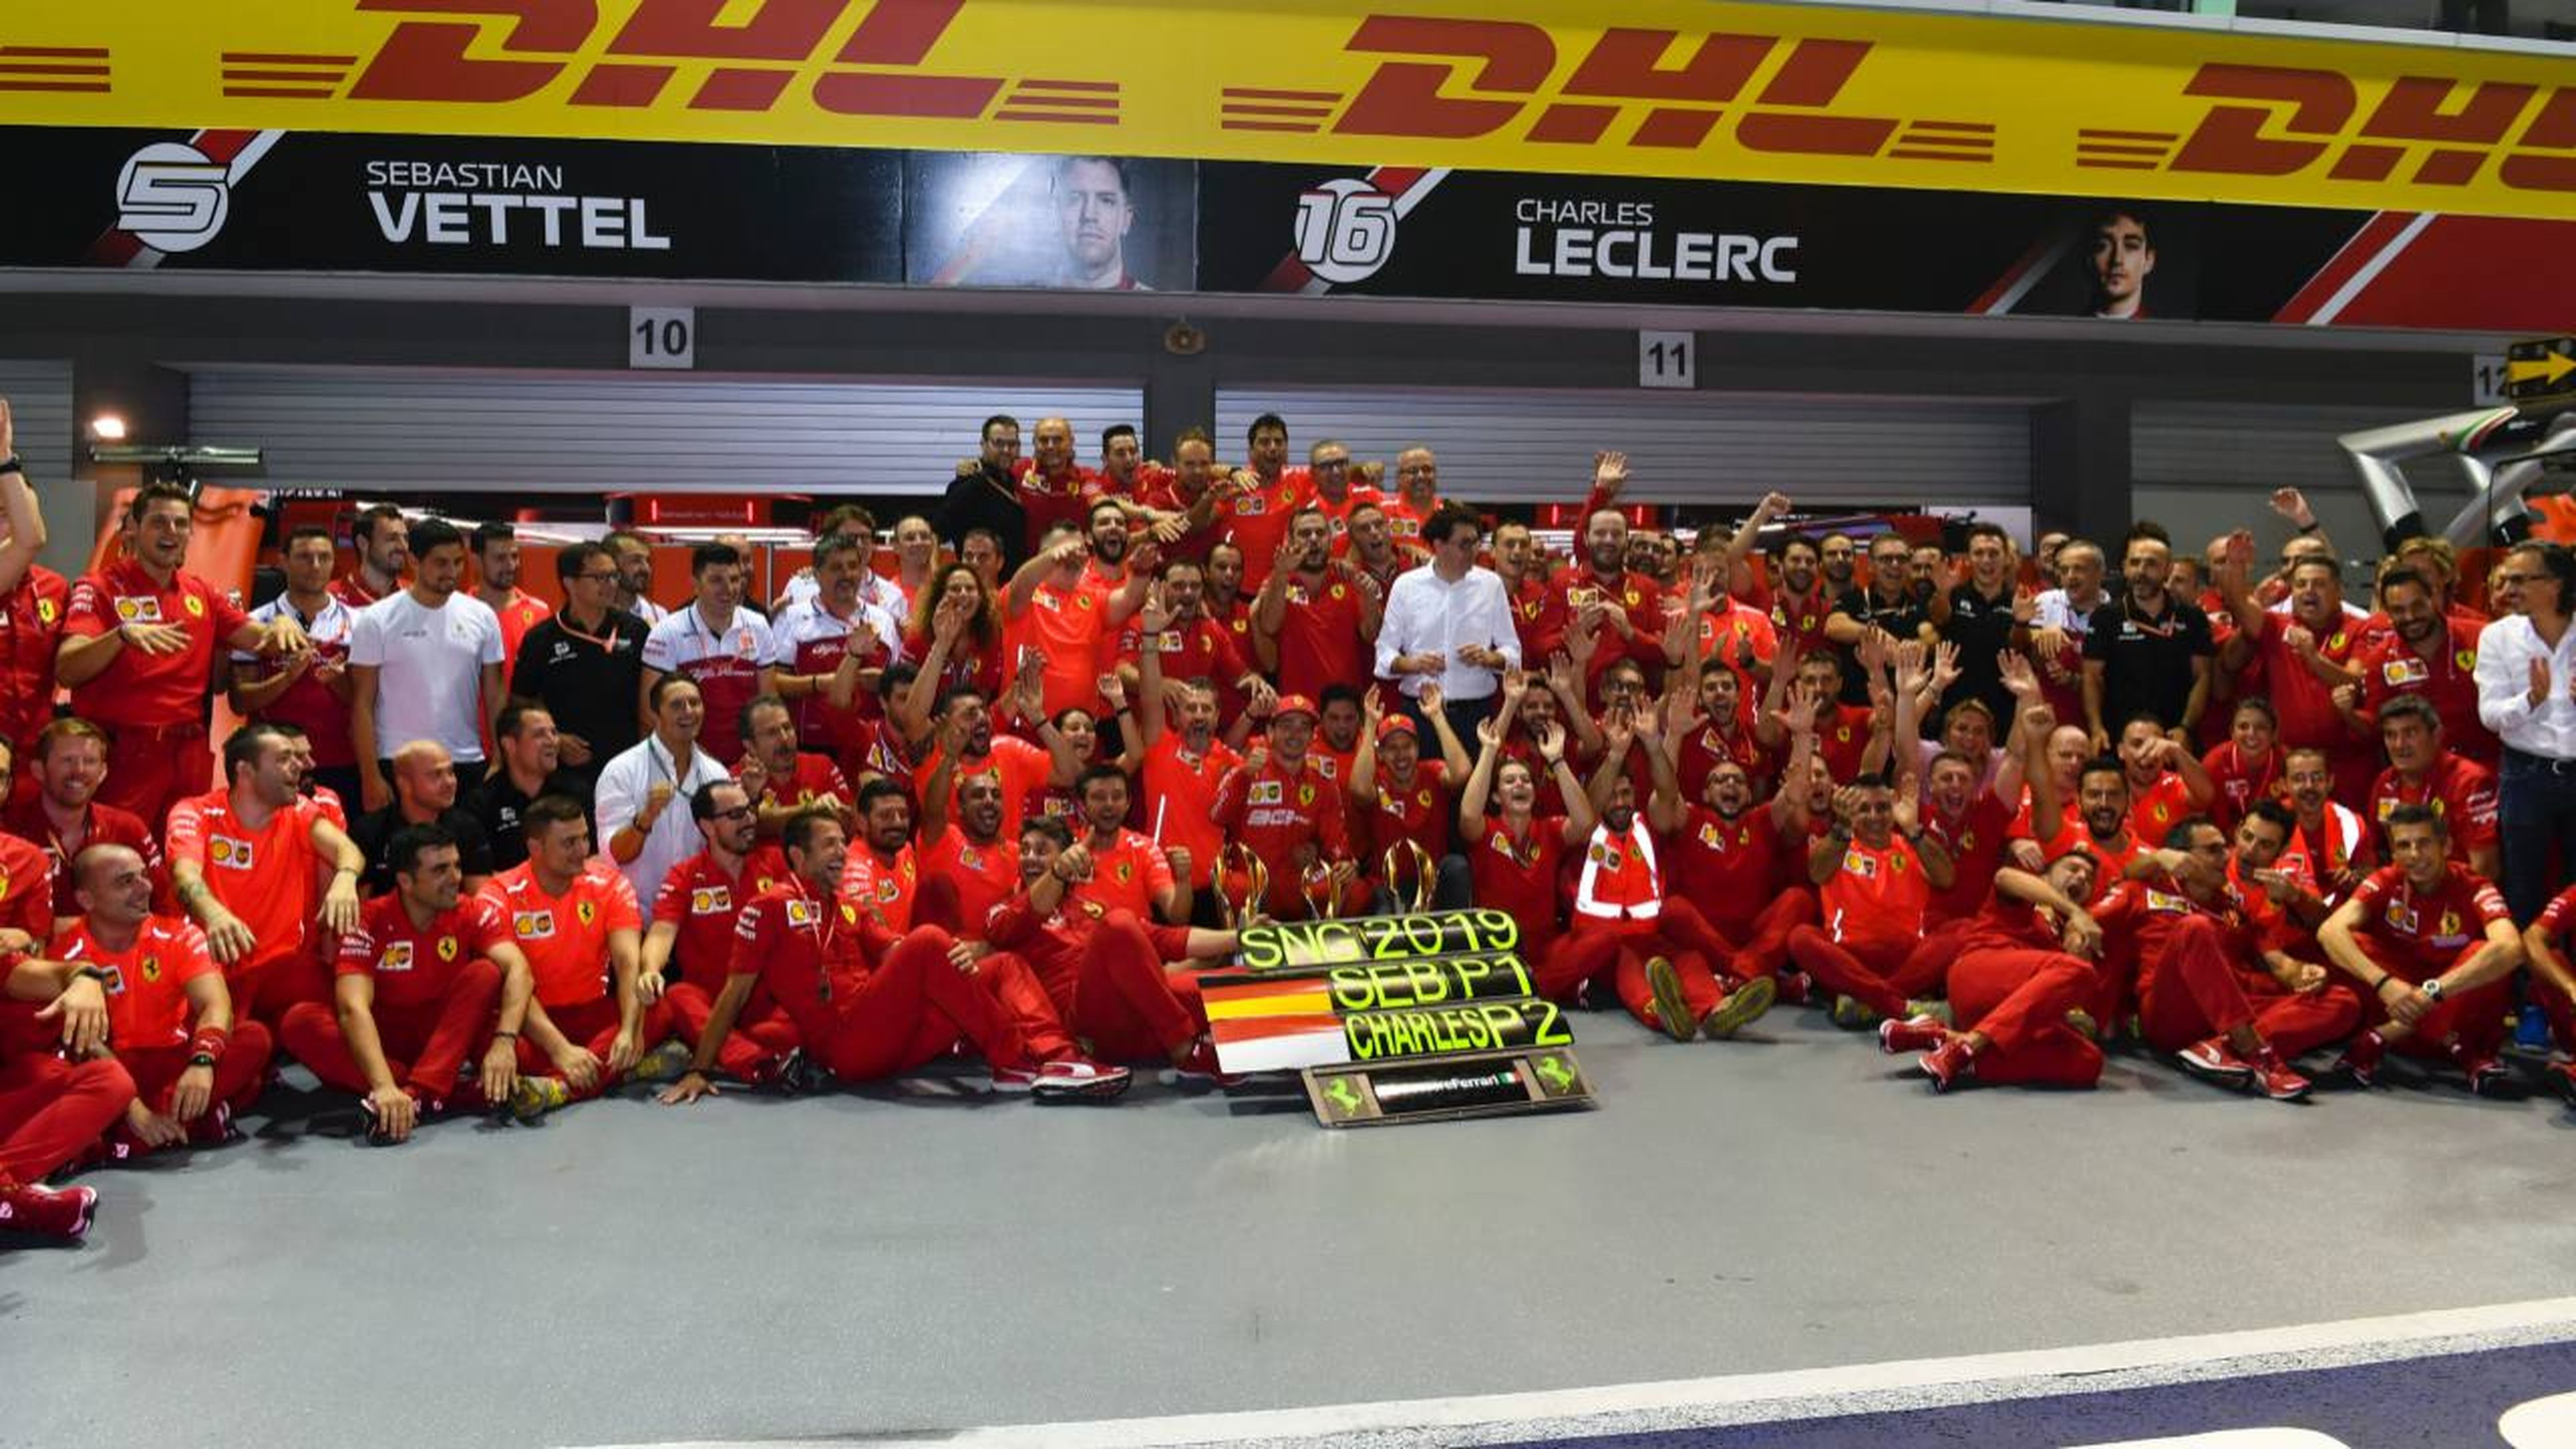 Celebración de Vettel y Ferrari